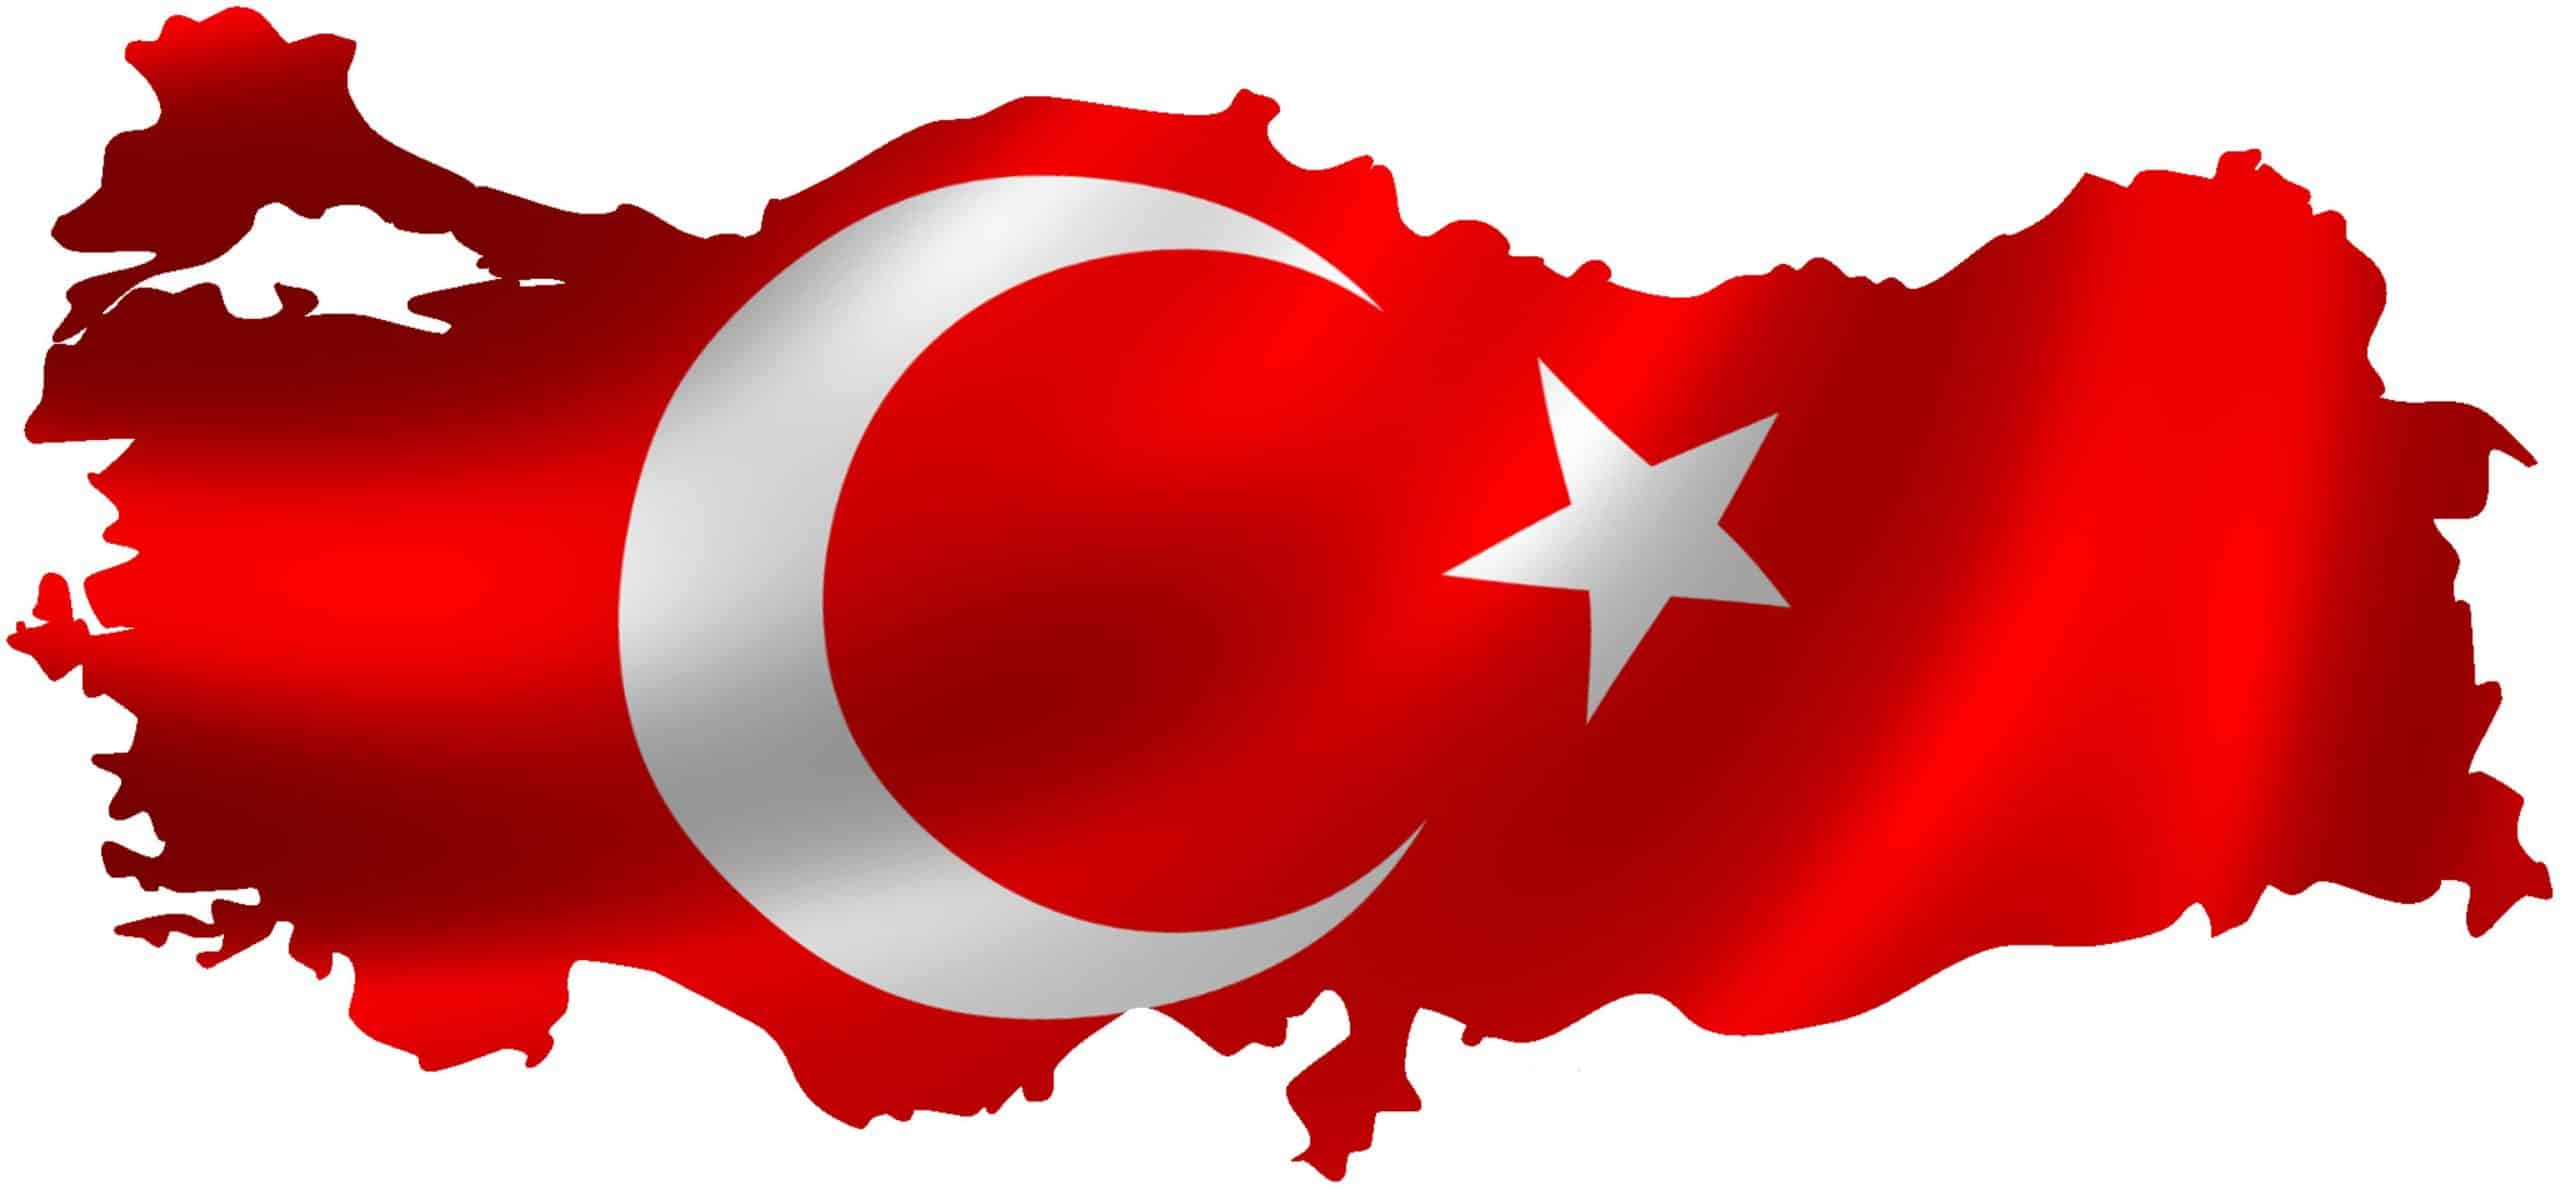 registering in Turkish universities